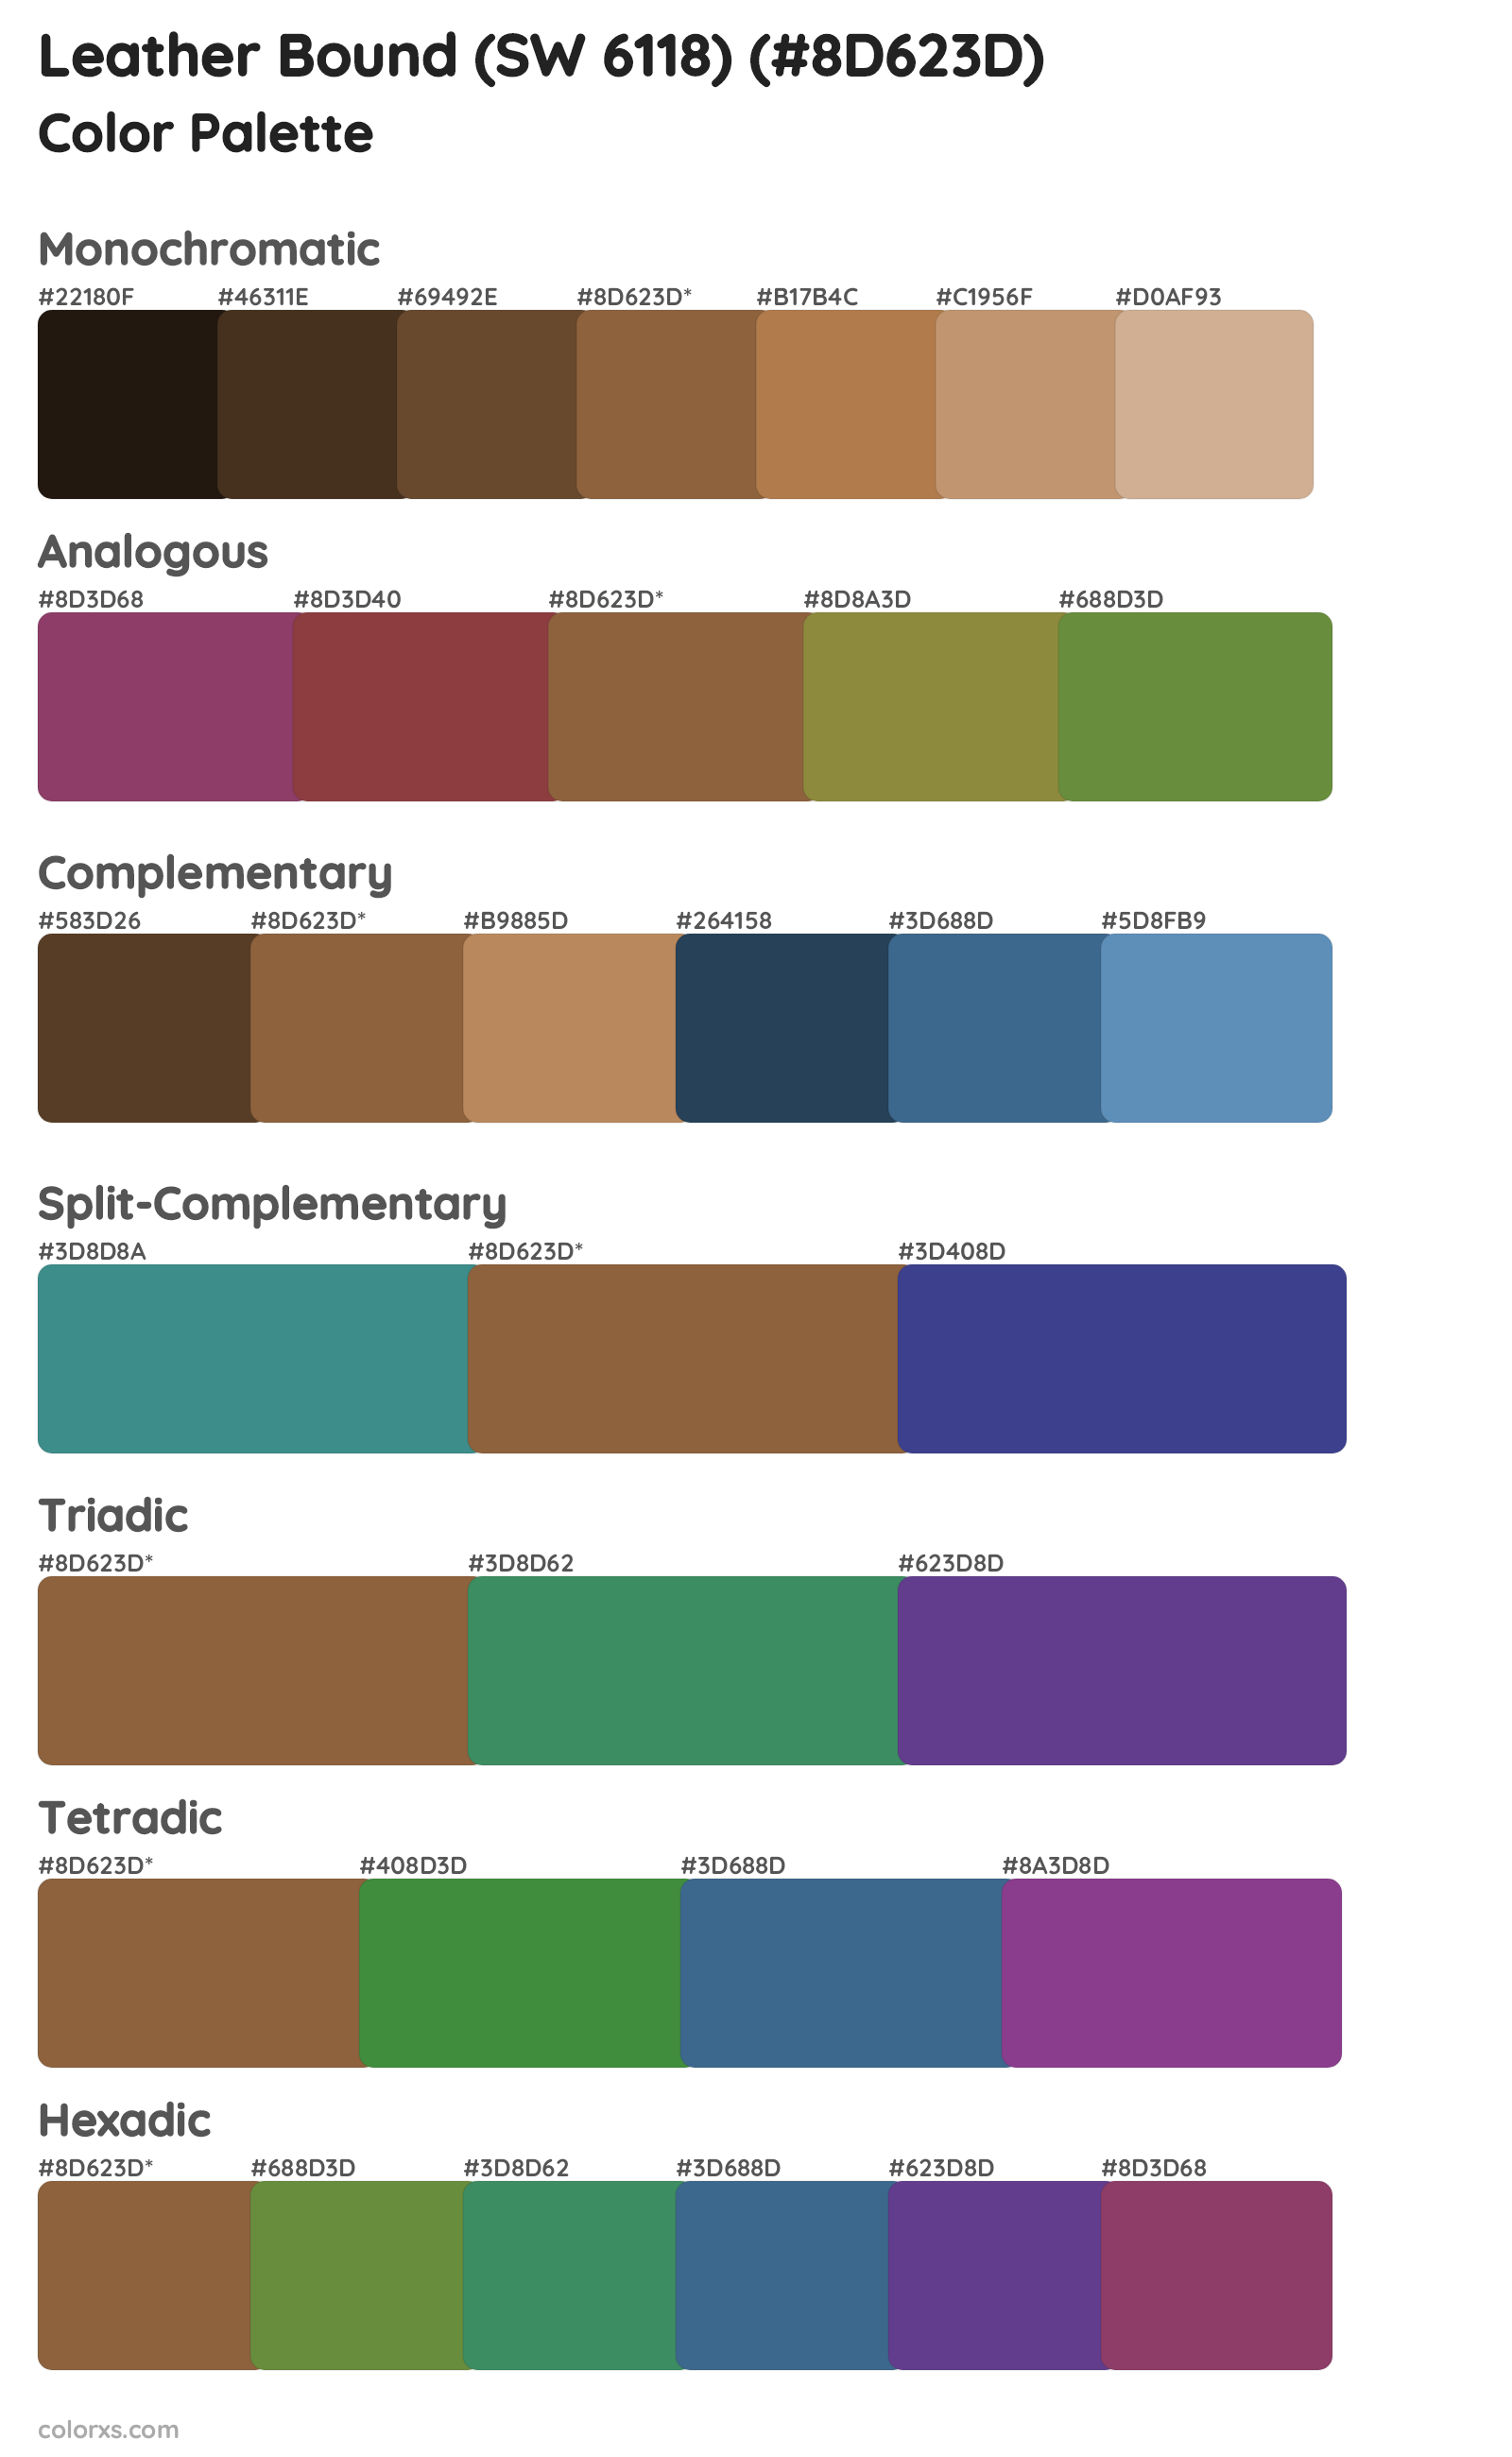 Leather Bound (SW 6118) Color Scheme Palettes